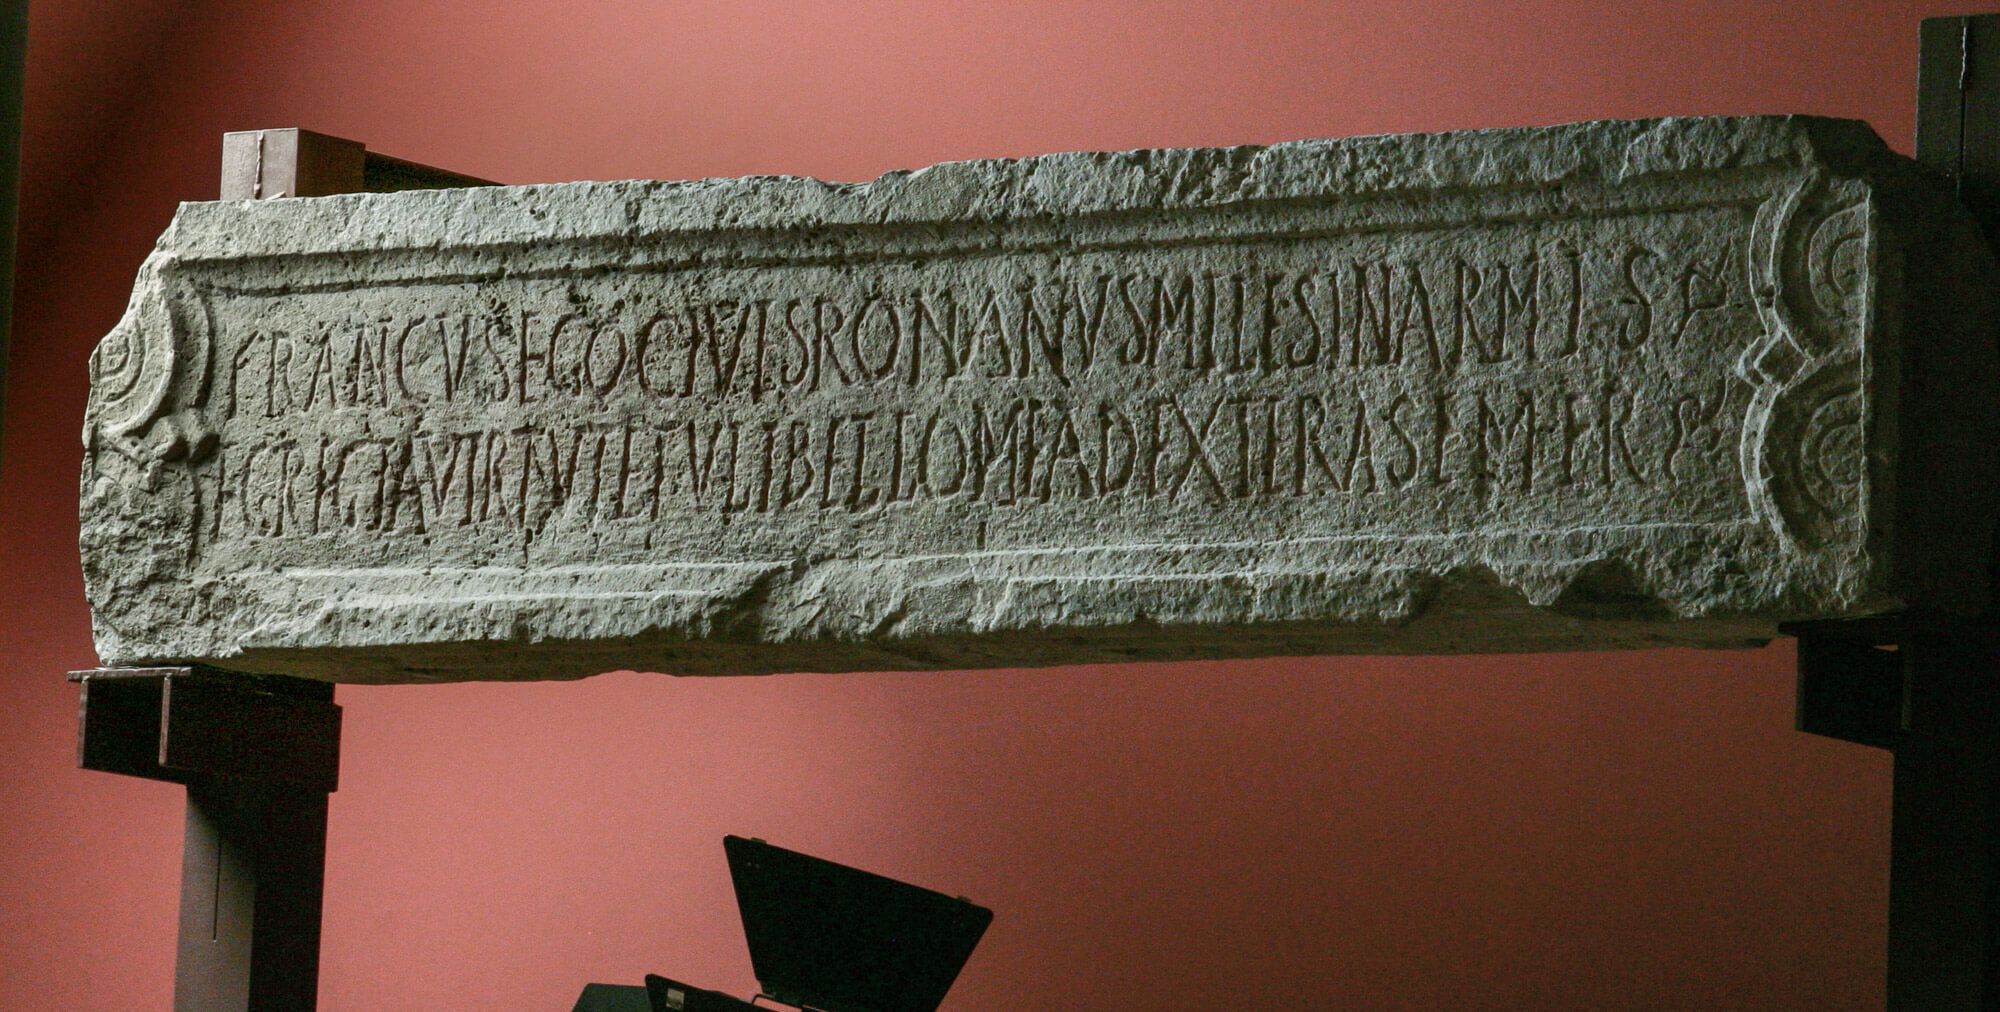 Inscripción funeraria de Aquincum frontera romana limes romano